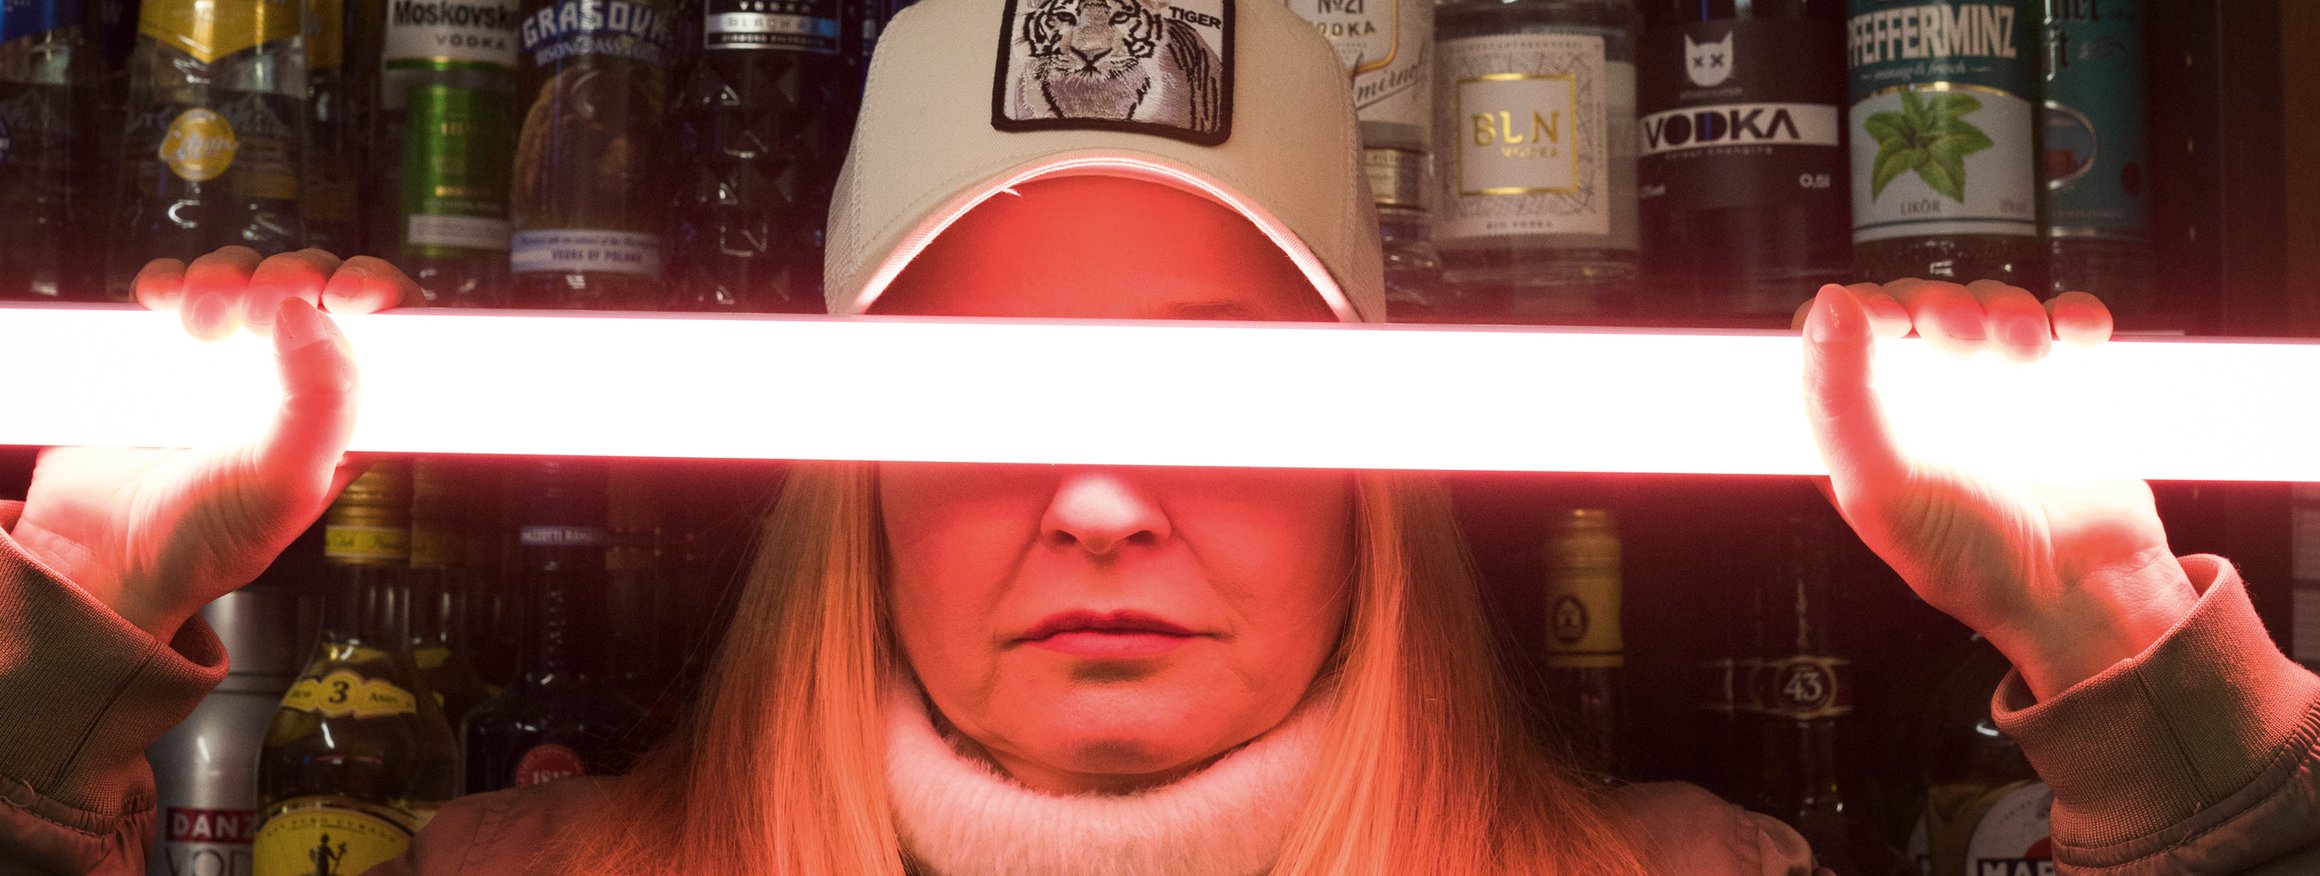 Eine Frau hält sich einen Leuchtstab vor die Augen, hinter ihr ist eine Thekenbar mit vielen alkoholischen Getränken in Flaschen